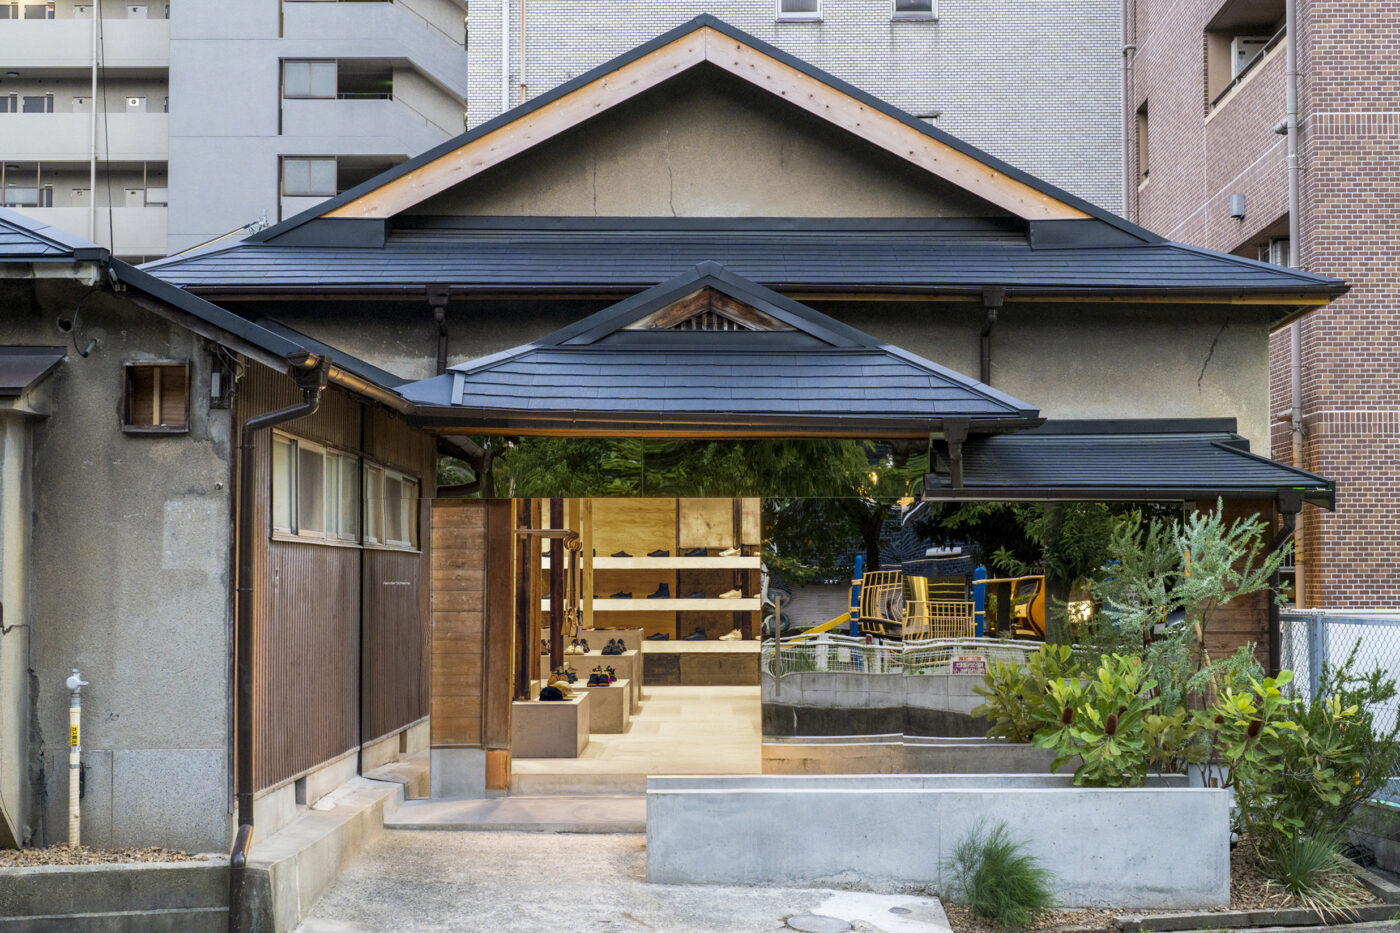 Hender Scheme関西初の直営店「スキマ 大阪」がオープン。 建築家・元木大輔が築60年以上の木造平家を「加装」した空間に、 フルラインナップのコレクションが展開される。